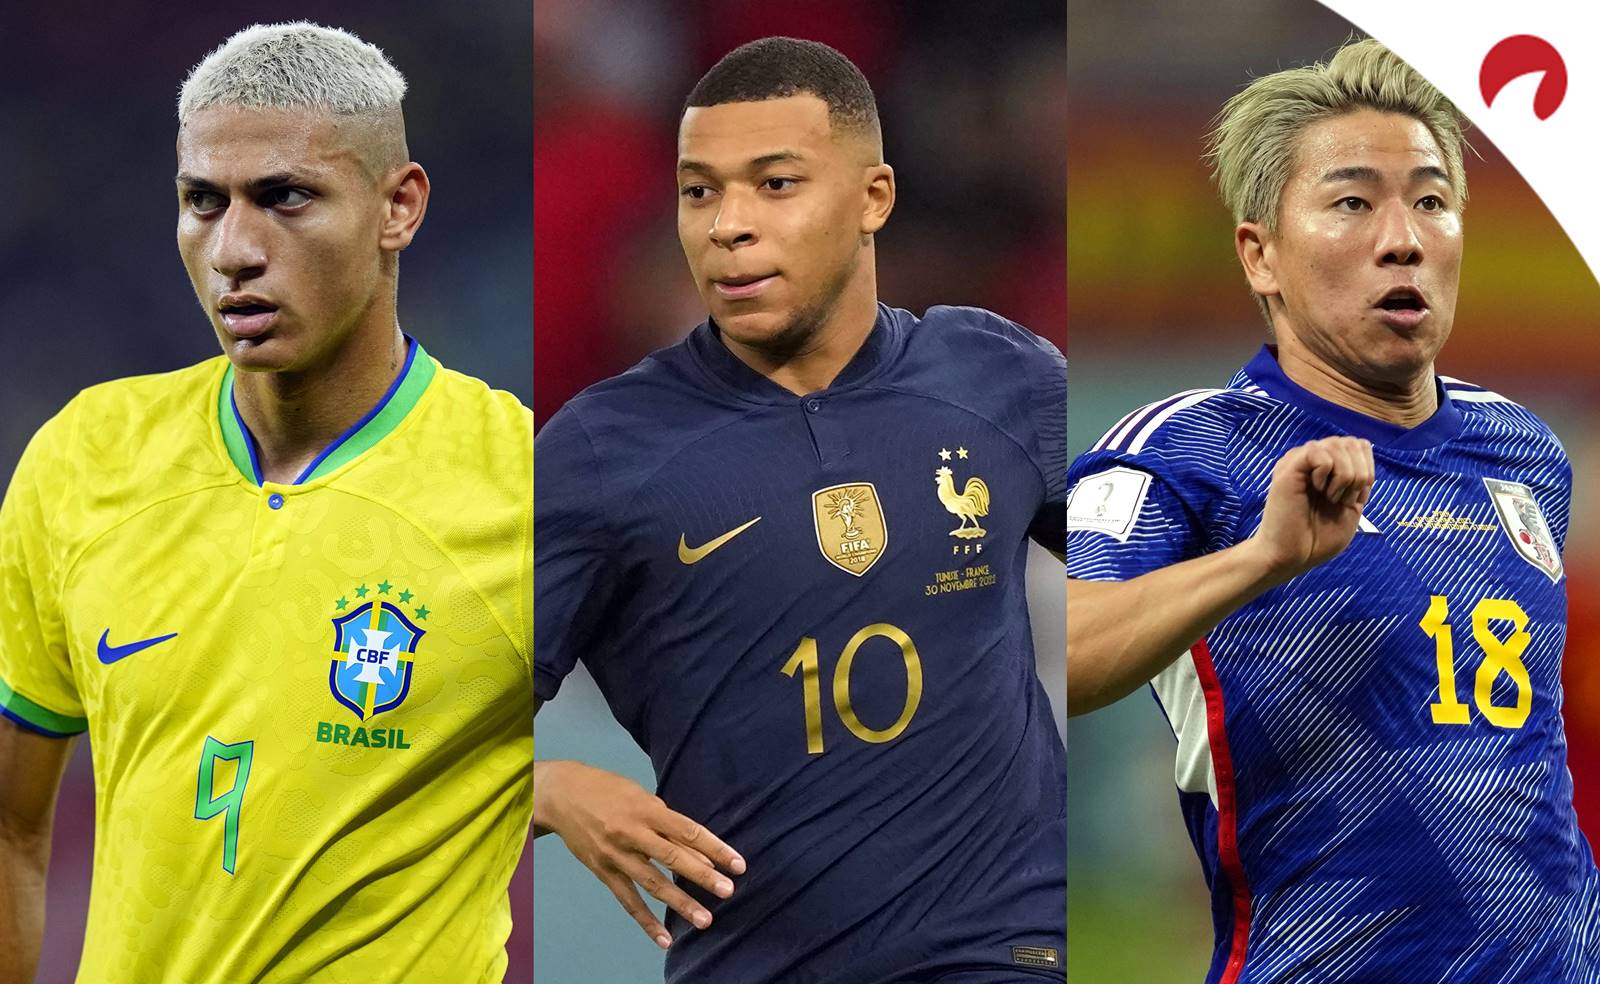 Palpites na Copa do mundo 2022: Quem vai para as oitavas?